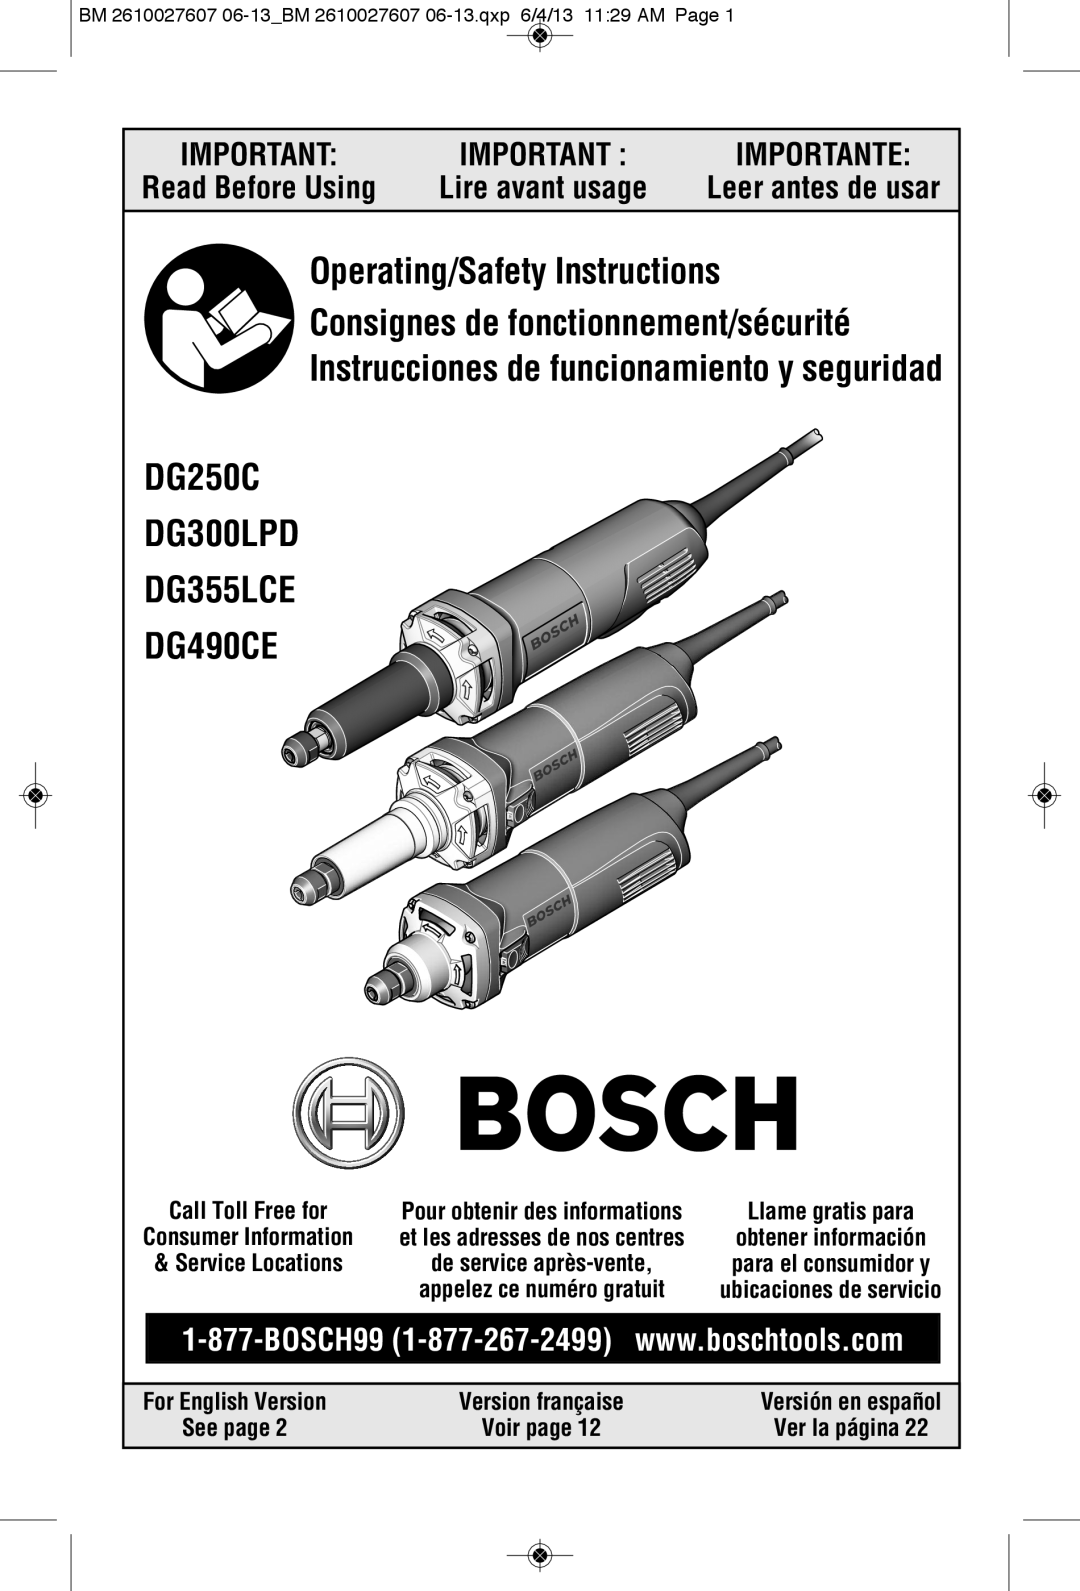 Bosch Power Tools manual Lire avant usage, Leer antes de usar, DG250C DG300LPD DG355LCE DG490CE, Importante 